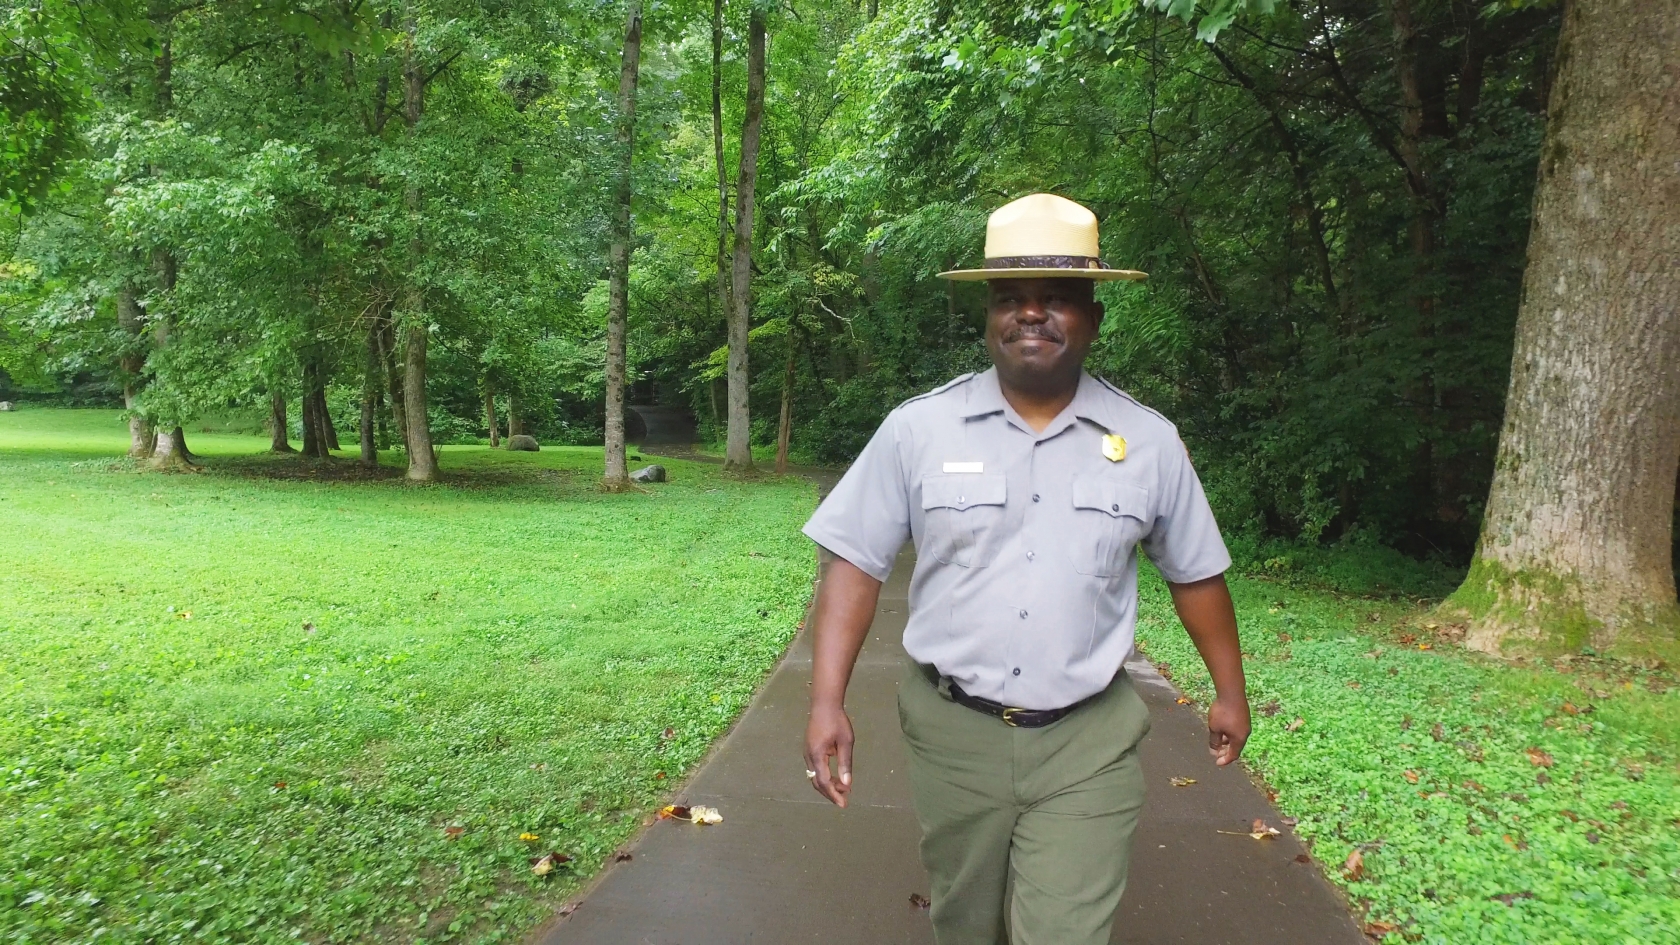 El superintendente Cassius Cash viste un uniforme de guardaparques y camina por un sendero boscoso